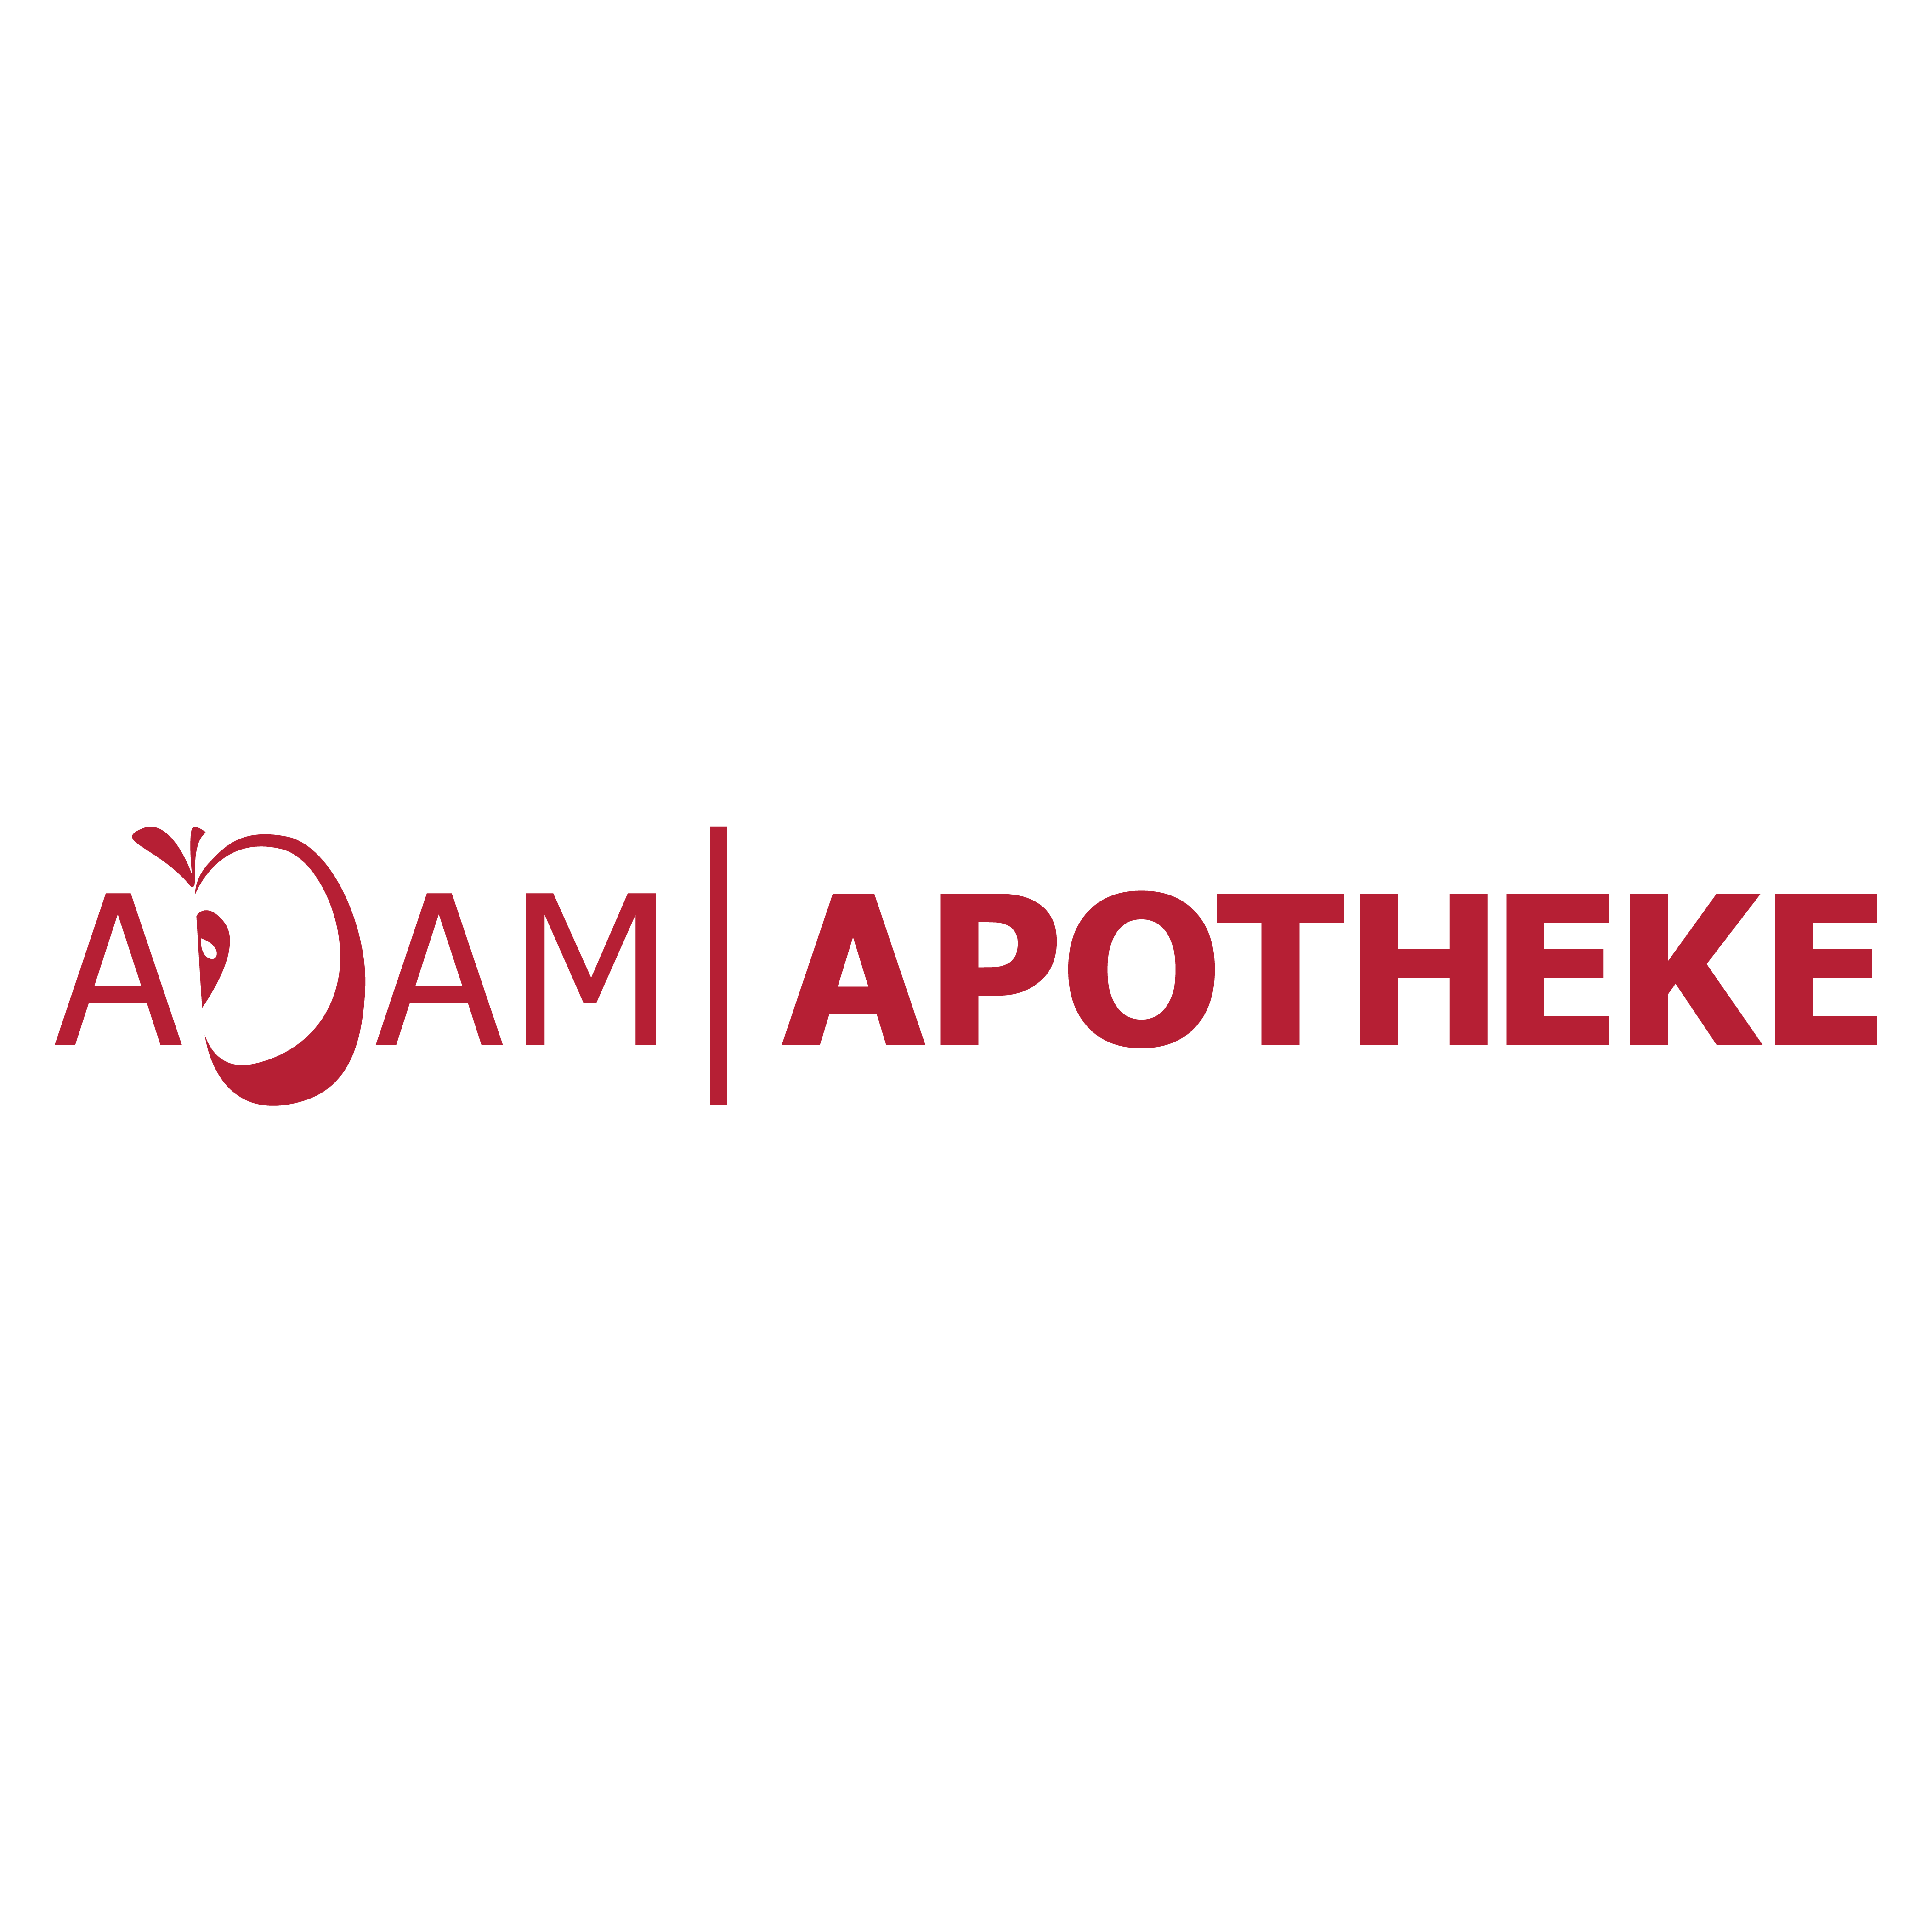 Adam-Apotheke  